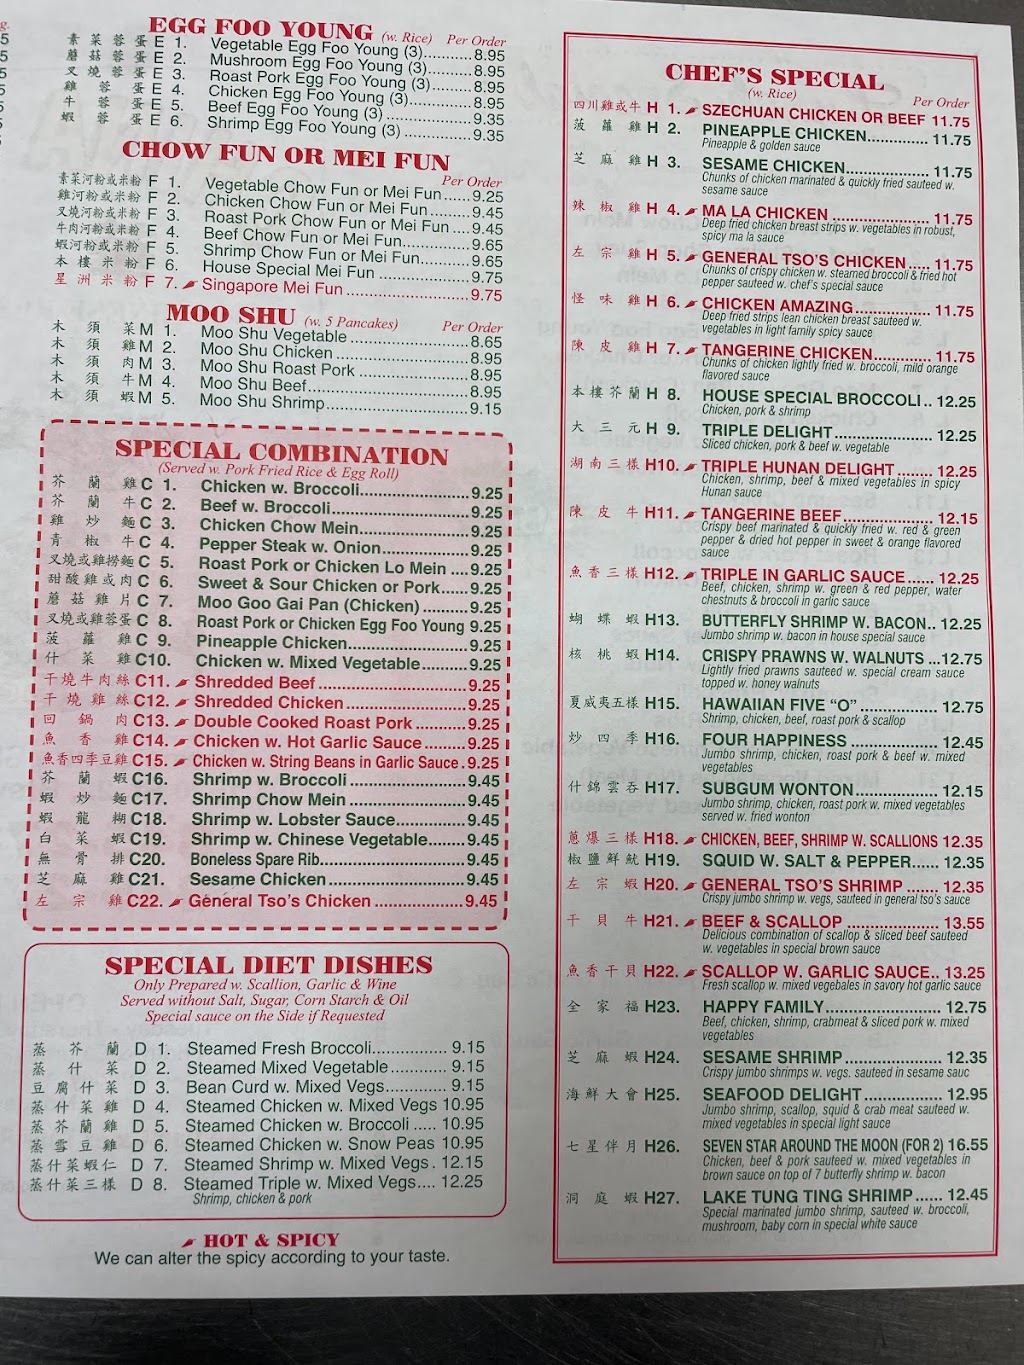 China Star Chinese Restaurant | 1620 NY-22, Brewster, NY 10509 | Phone: (845) 278-8999